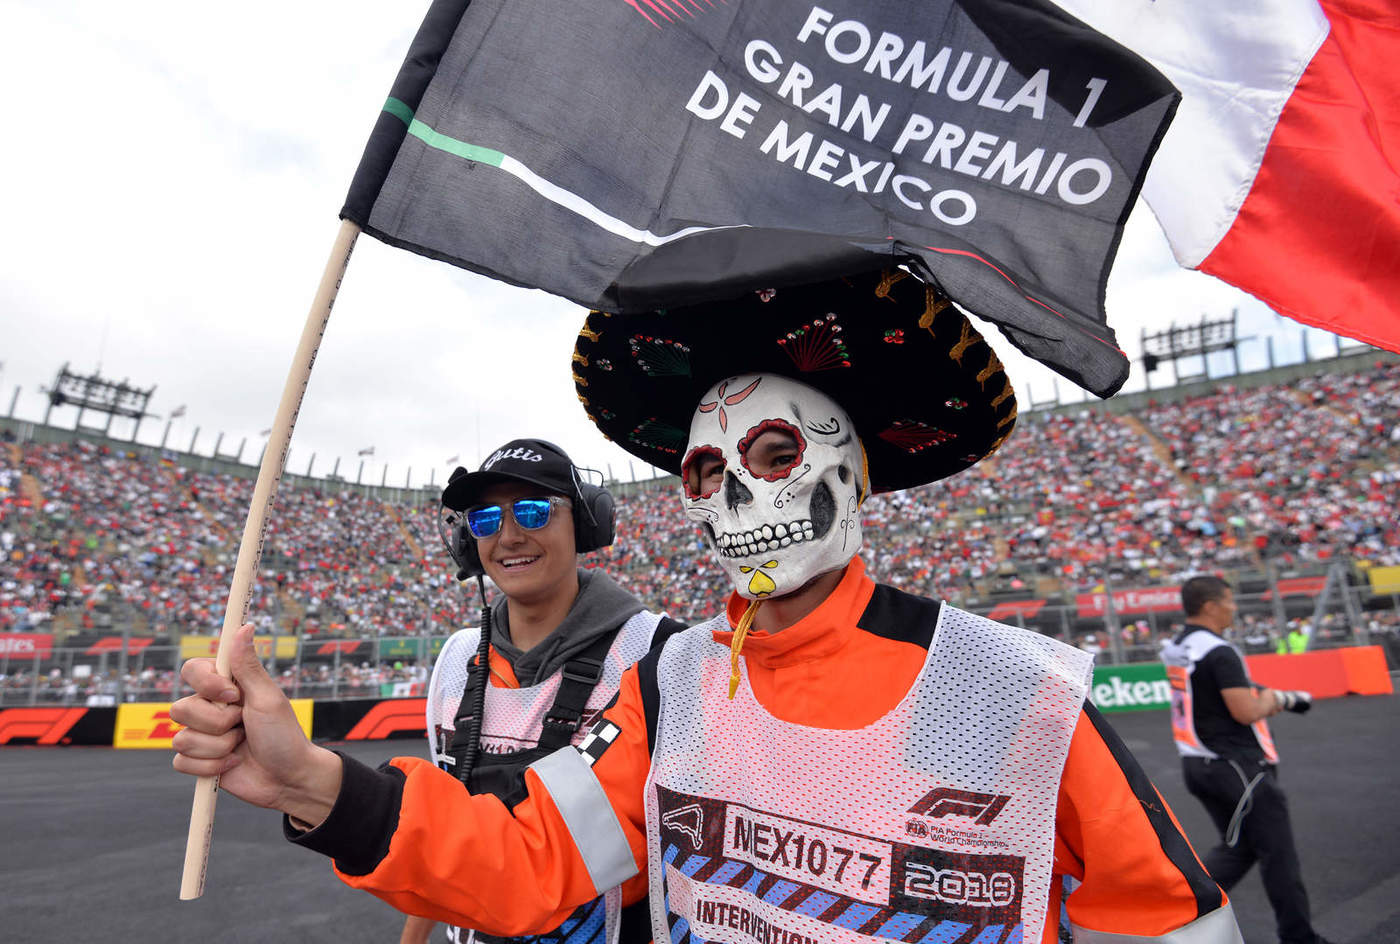 El ambiente que se vive durante la visita de la Fórmula 1 a México lo ha convertido en un atractivo turístico. (Especial)